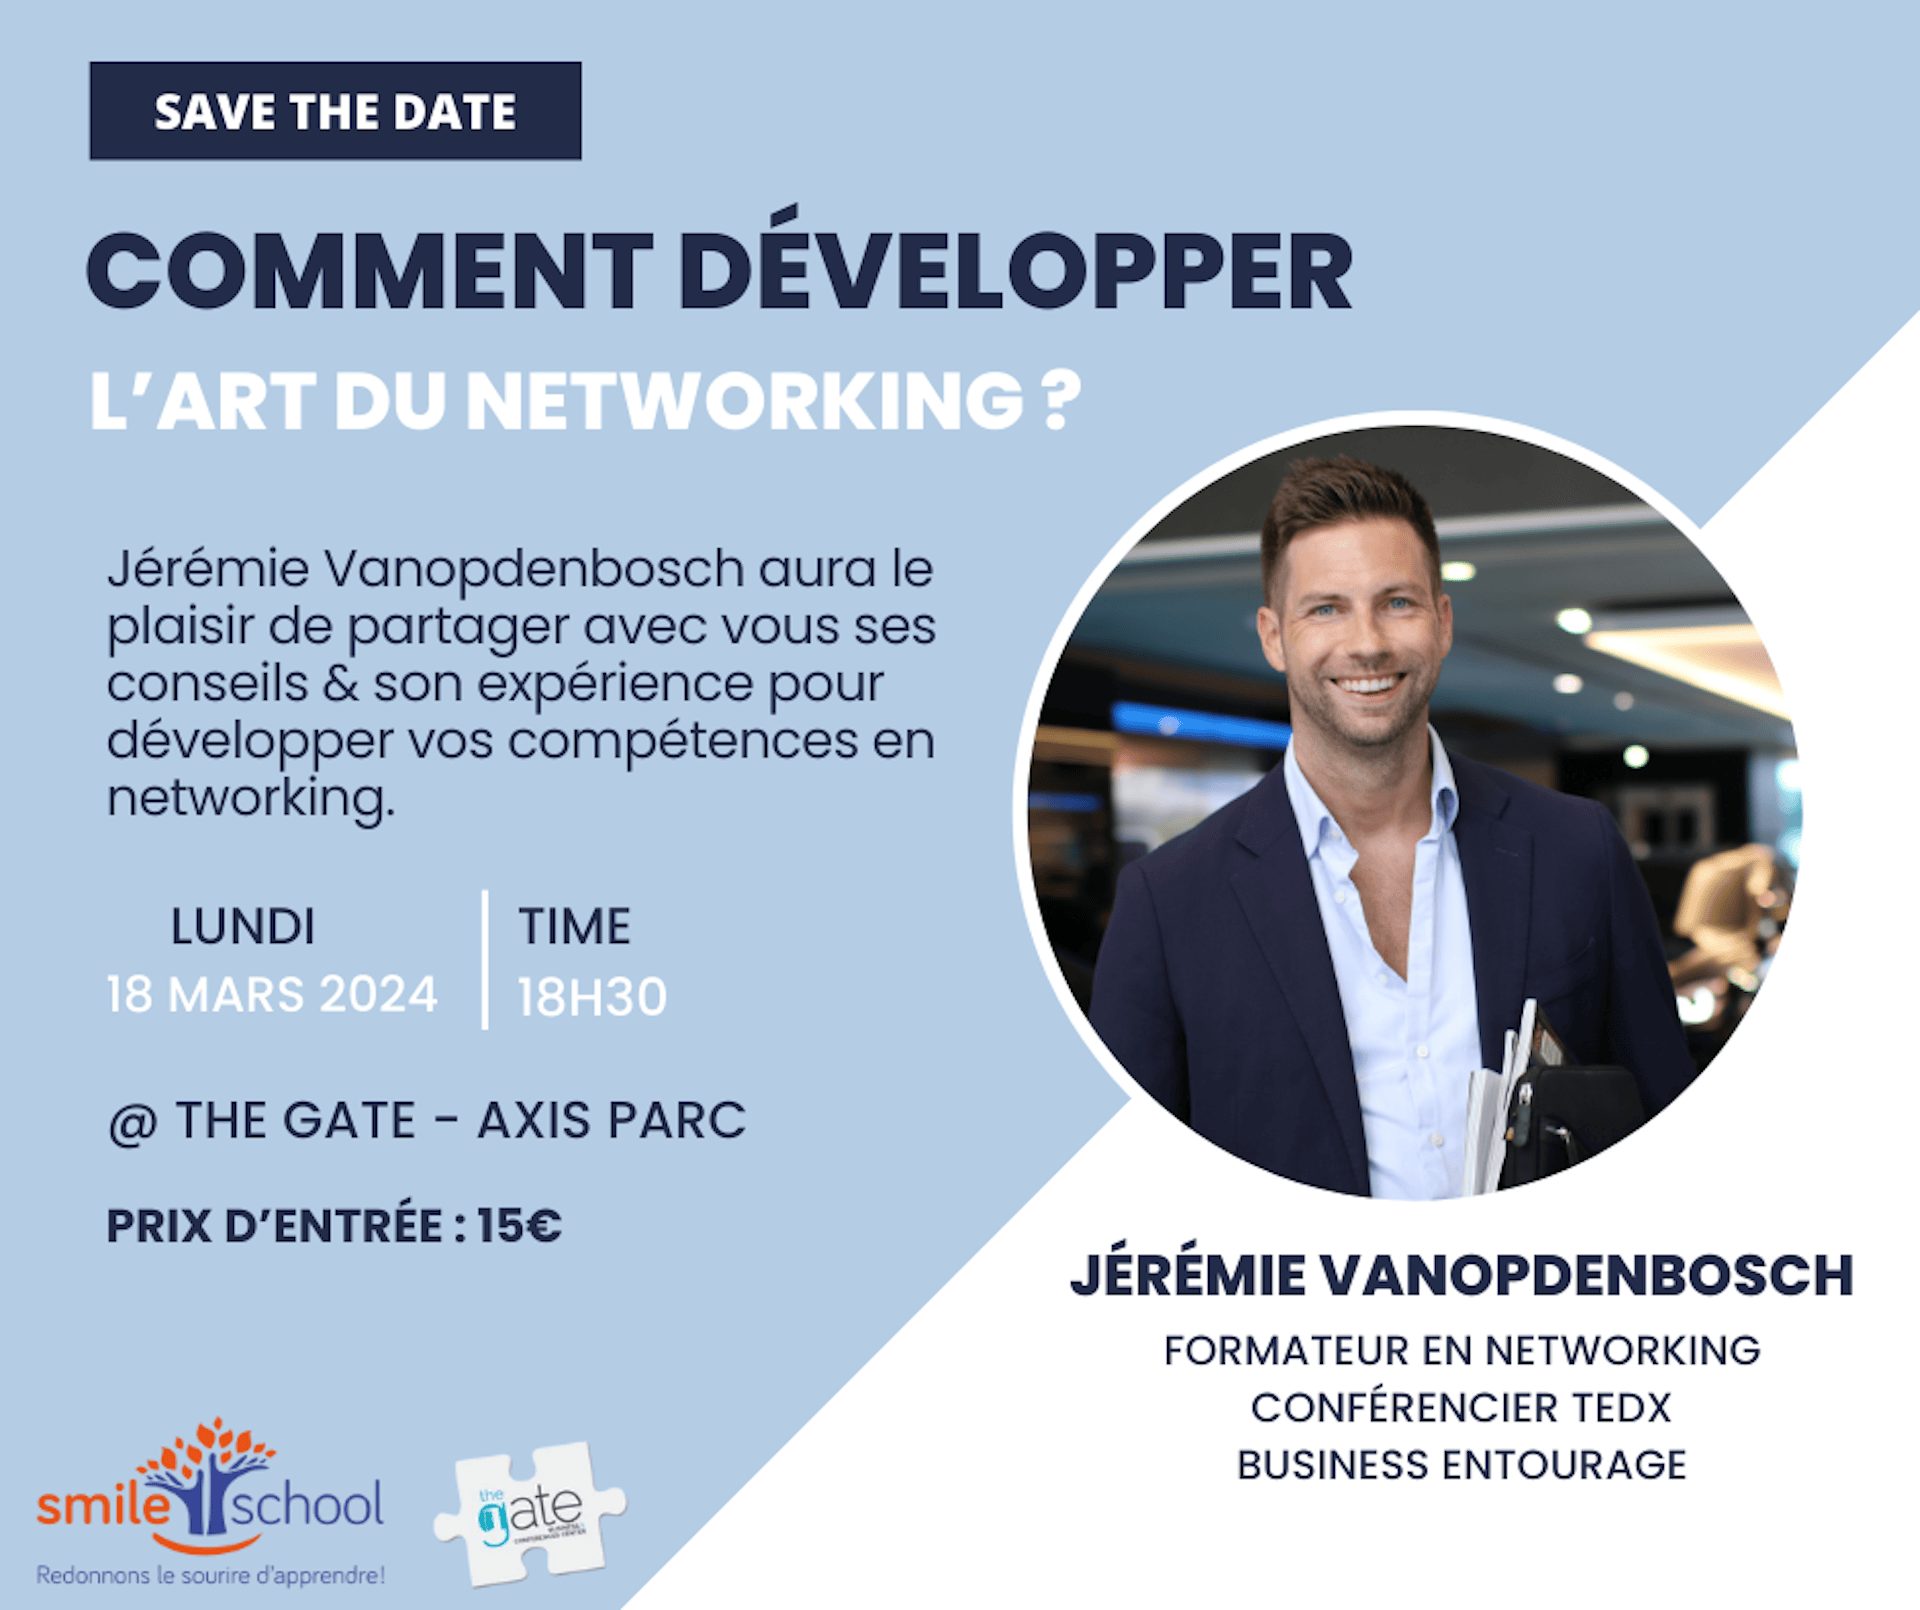 Visuel d'annonce de la conférence de Jérémie Vanopdenbosch